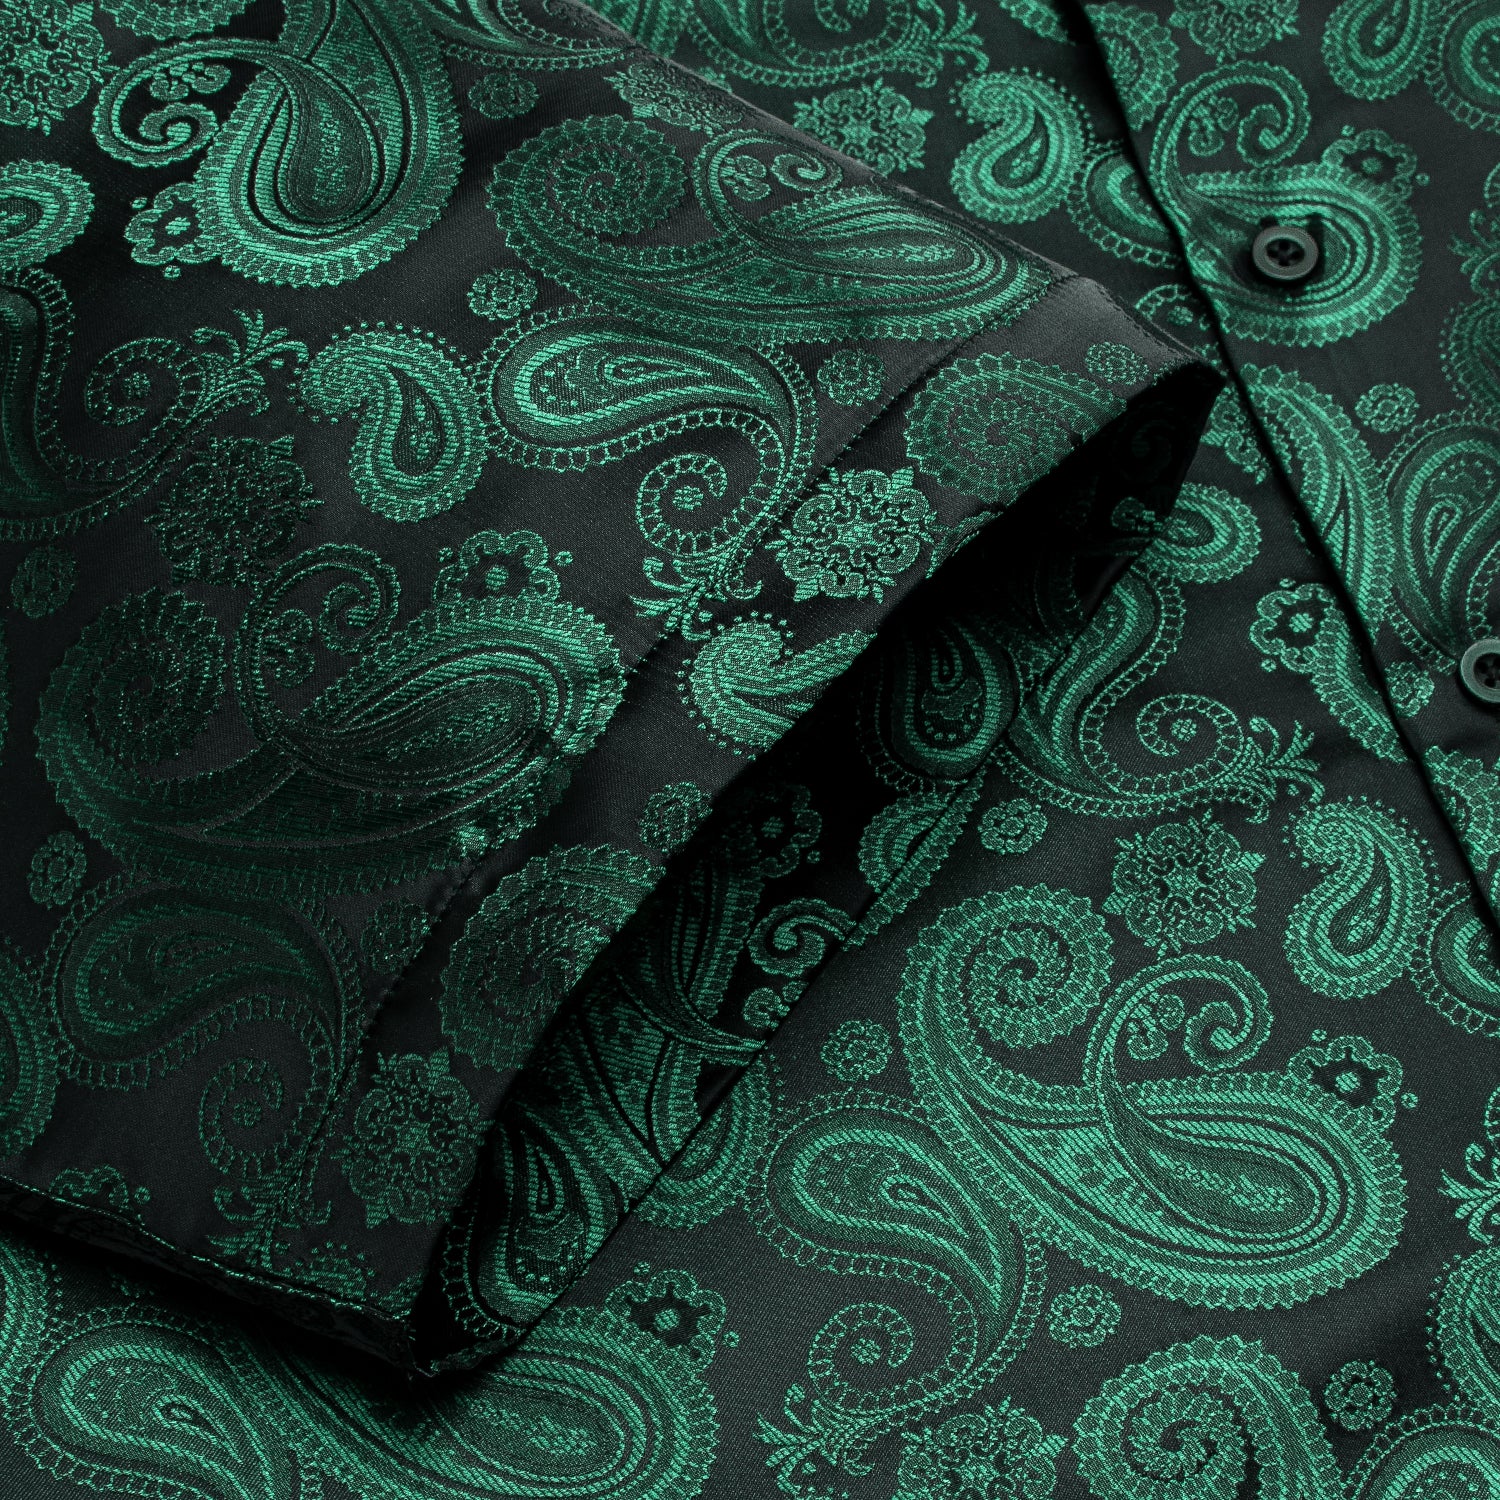 Hitie Emerald Green Paisley Silk Men's Short Sleeve Shirt